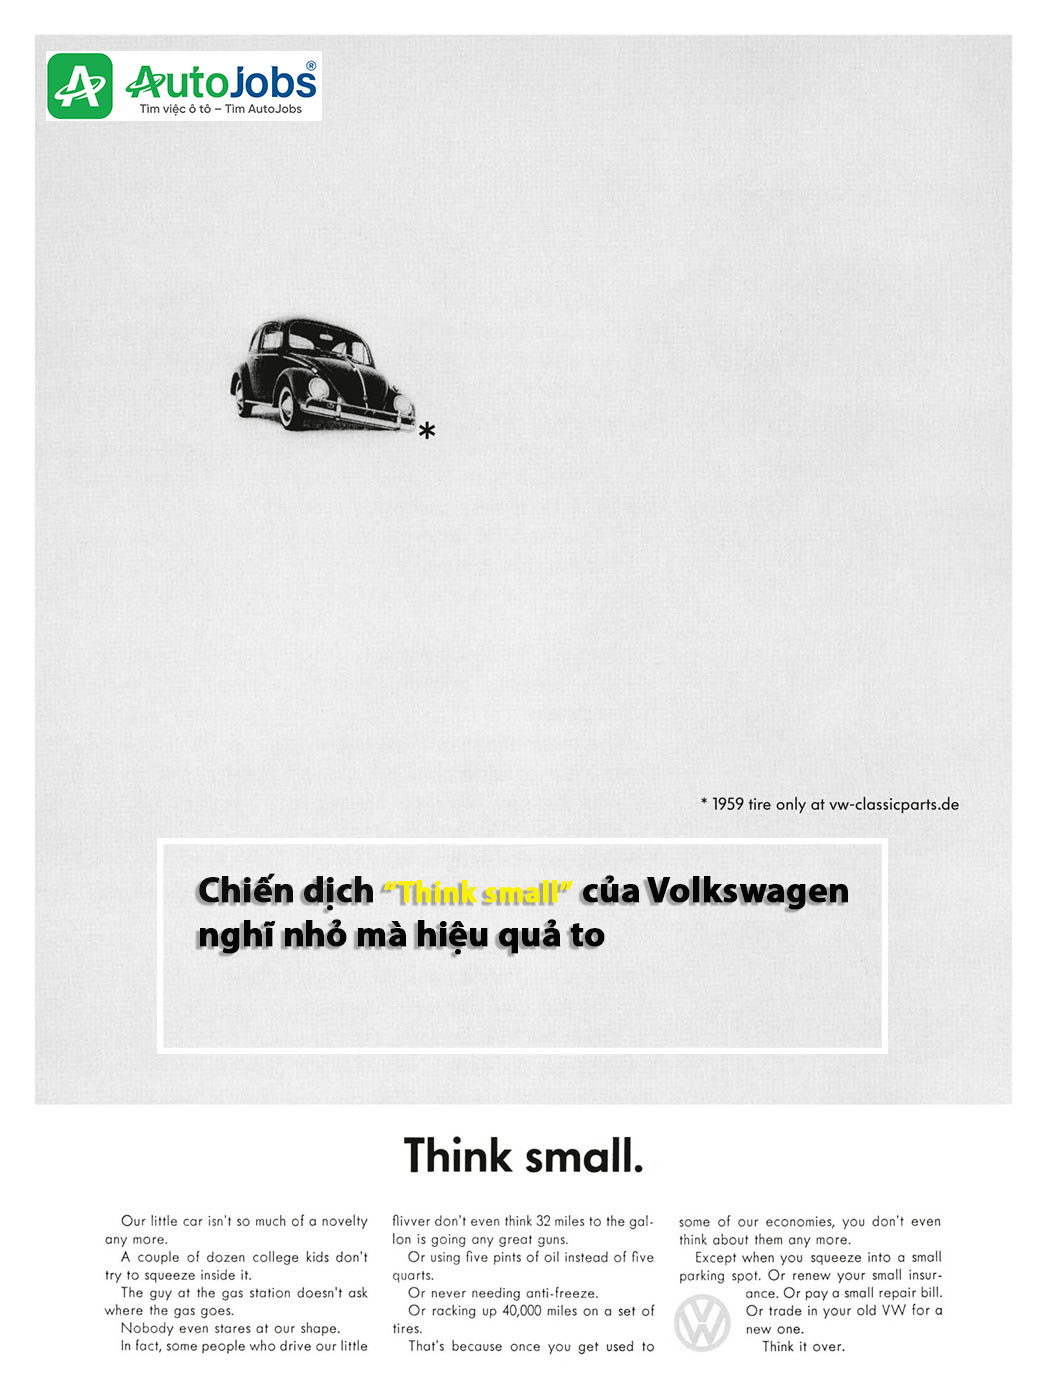 Chiến dịch “Think small” Của Volkswagen nghĩ nhỏ mà hiệu quả to.jpg